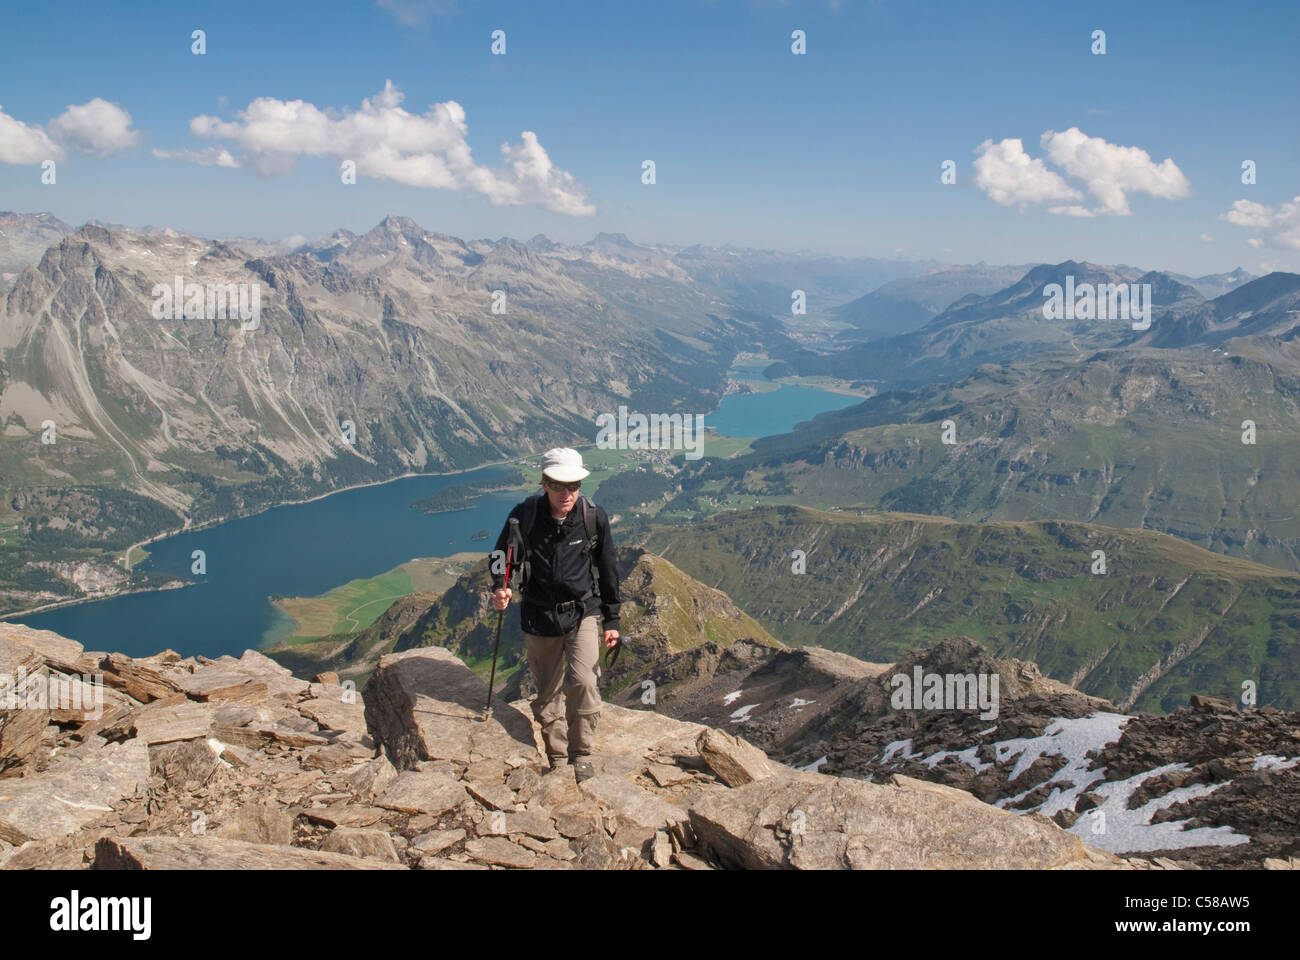 3000, adventure, Alpinism, alpinist, alpine traveller, alpine walking, alpine wandering, mountains, mountain lake, mountaineerin Stock Photo